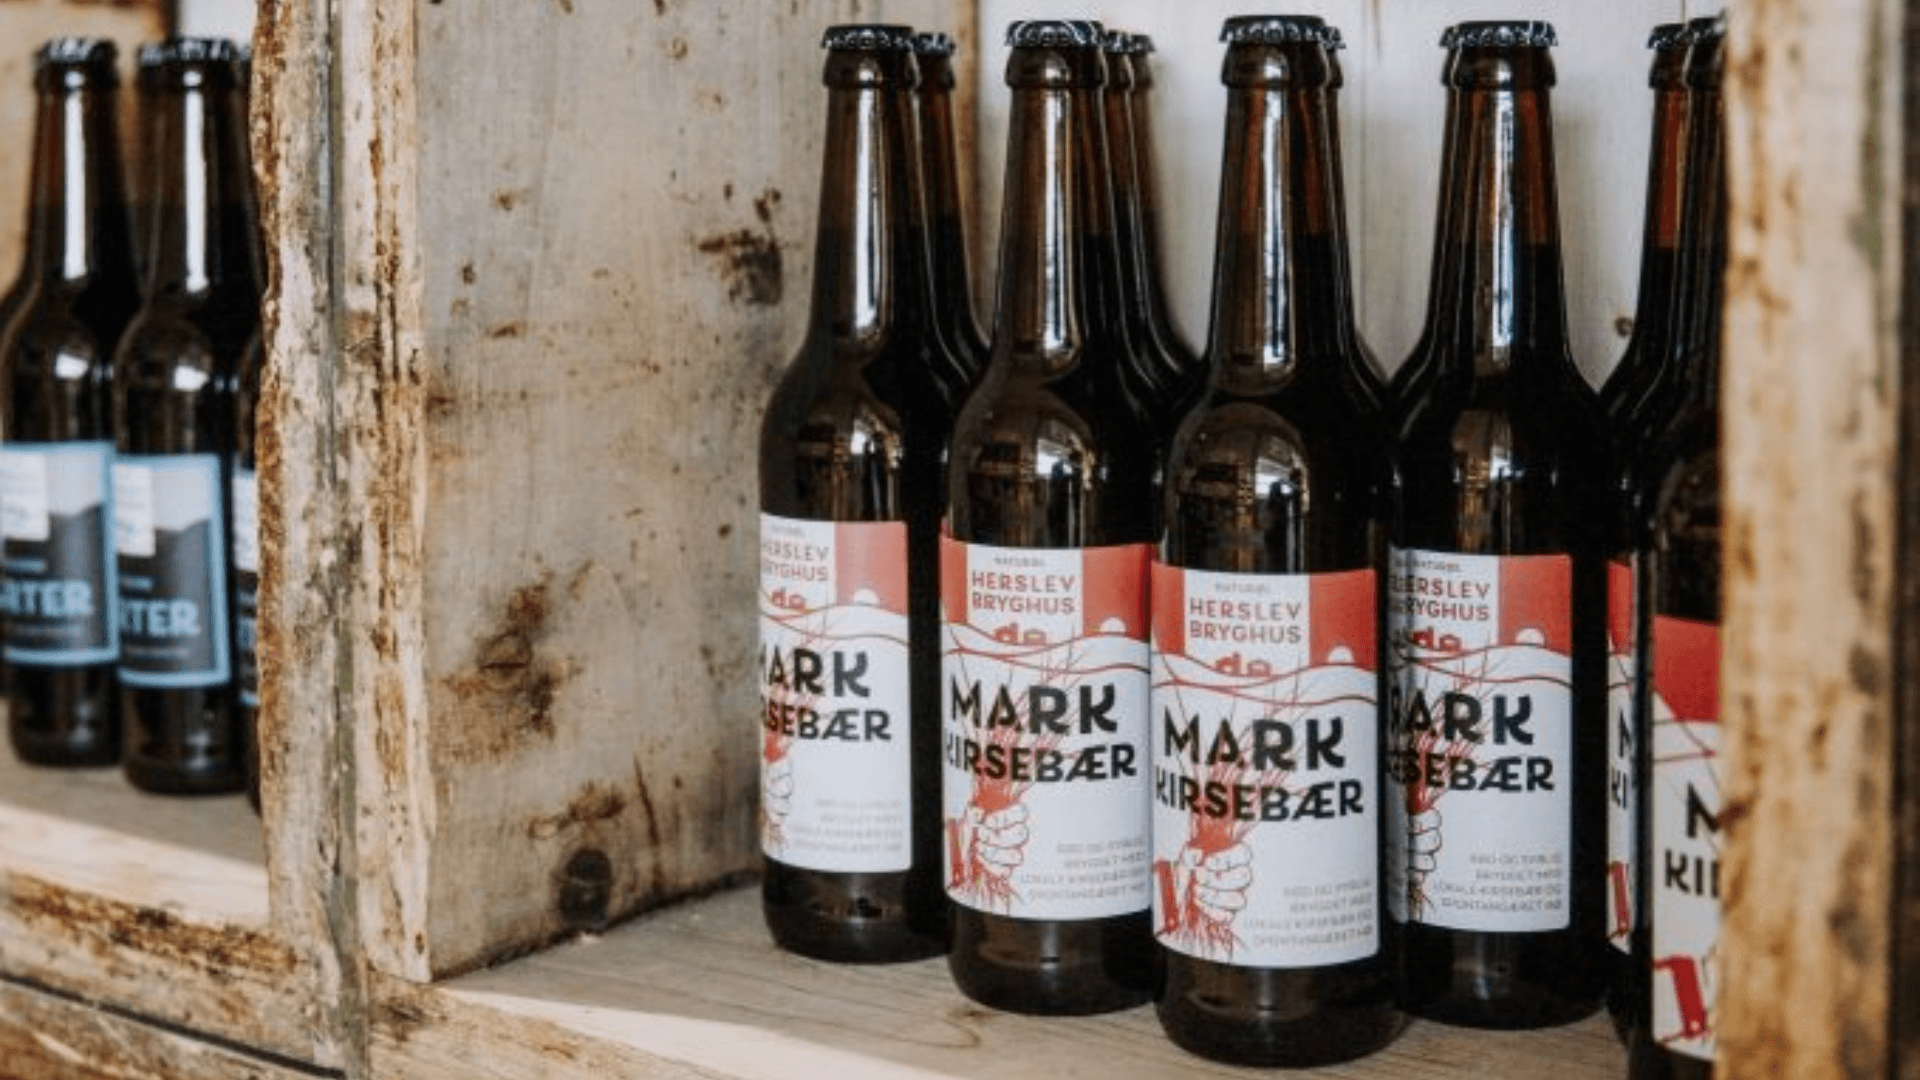 Ølsmagning og rundvisning på Herslev bryghus